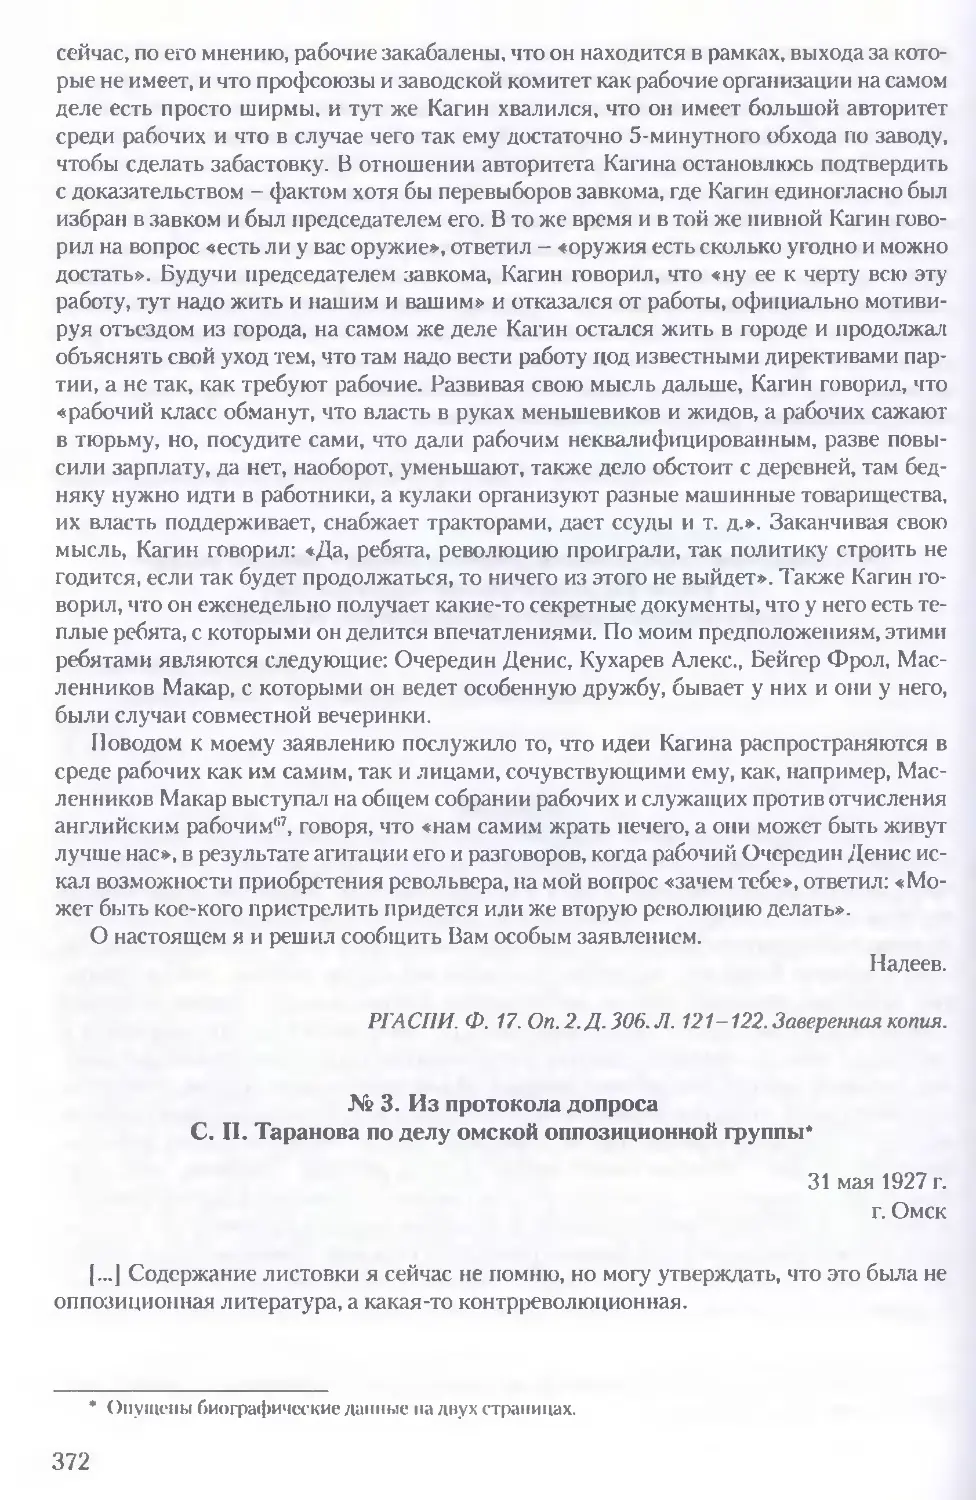 3. Из протокола допроса С. П. Таранова по делу омской оппозиционной группы. 31 мая 1927 г.